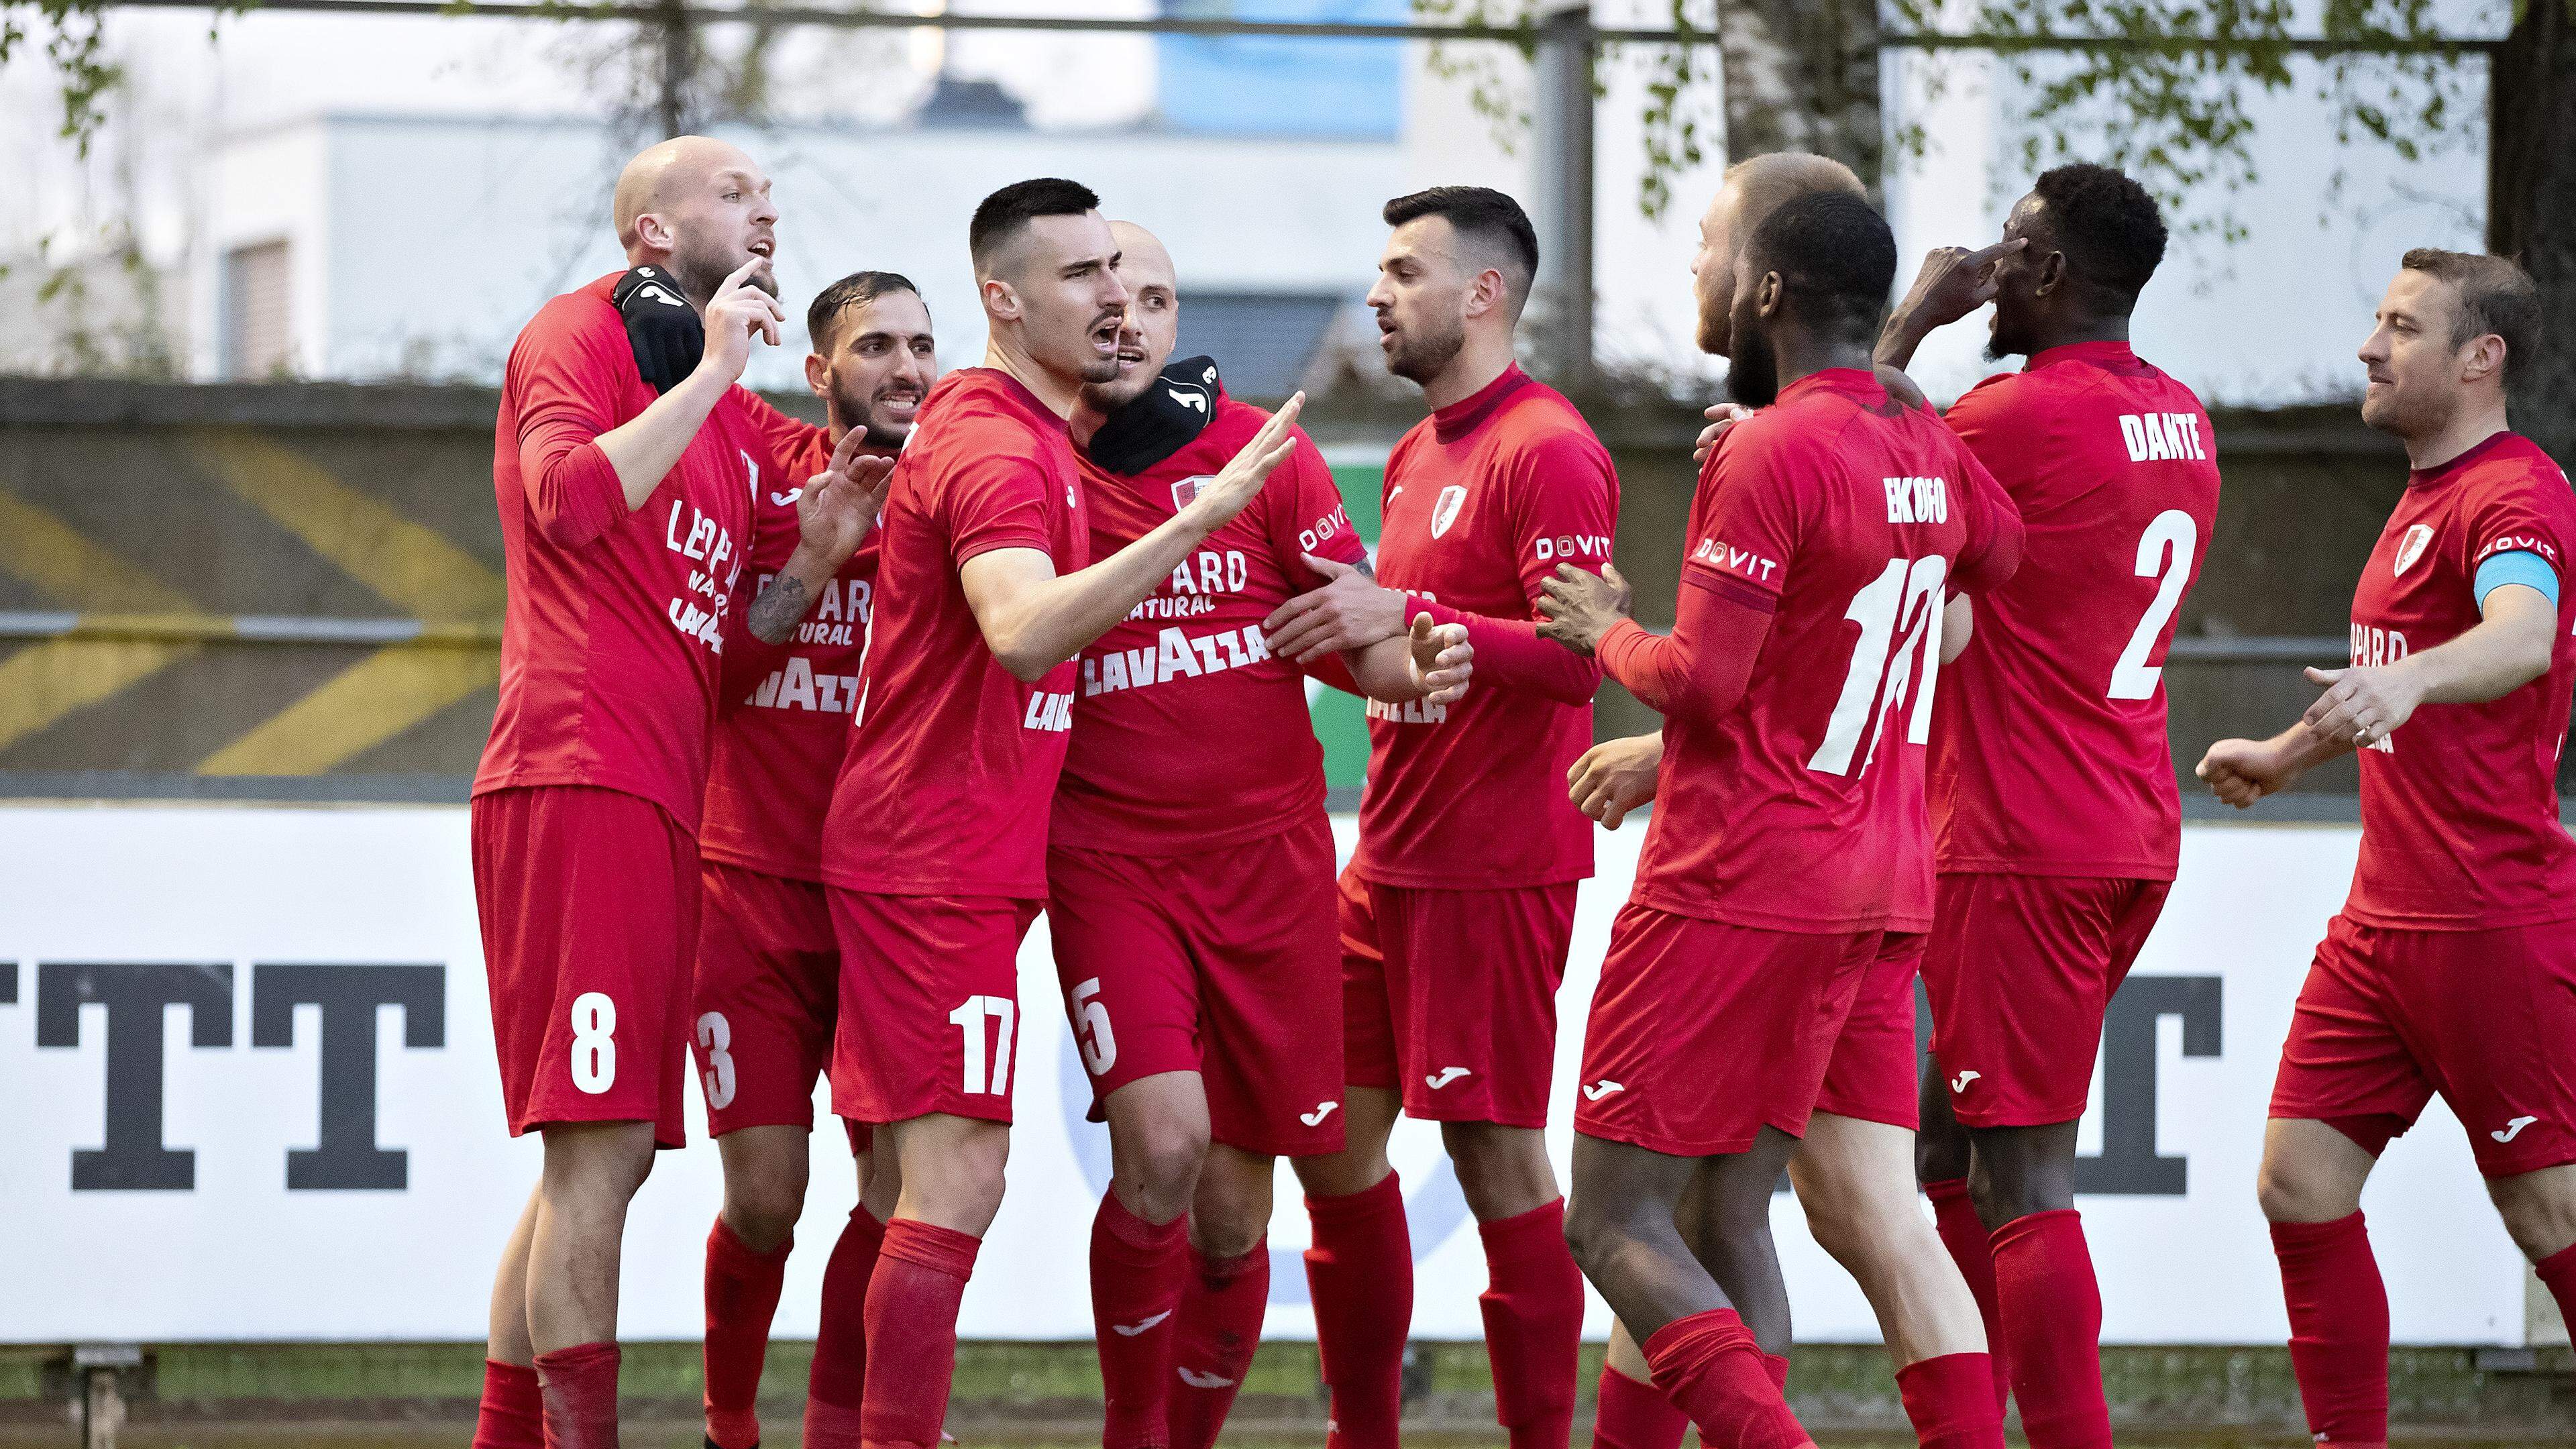 Hesperingens Spieler konnten nach dem Einzug ins Pokalhalbfinale den nächsten wichtigen Erfolg feiern.